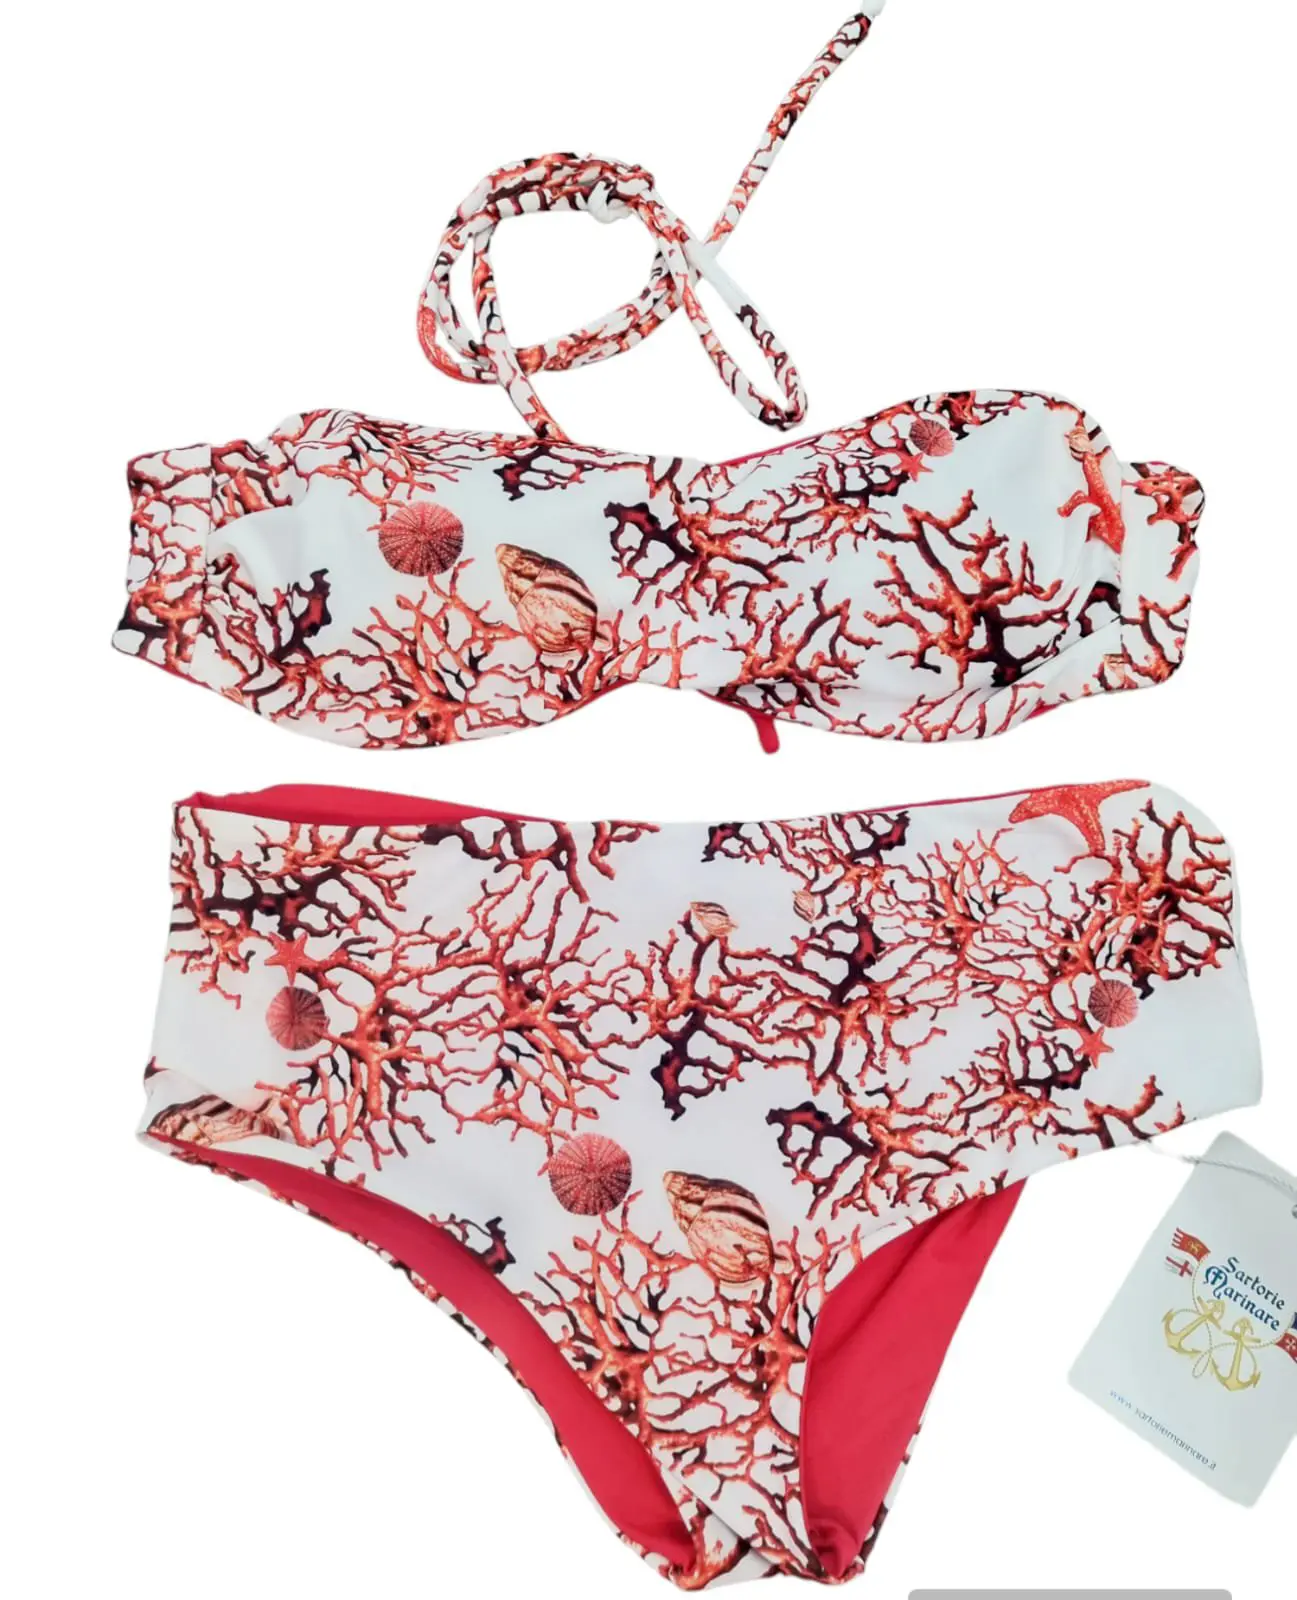 Bikini double face a fascia con possibilità di inserire i laccetti,slip coulotte .
Fantasia corallo e rosso
Taglia S